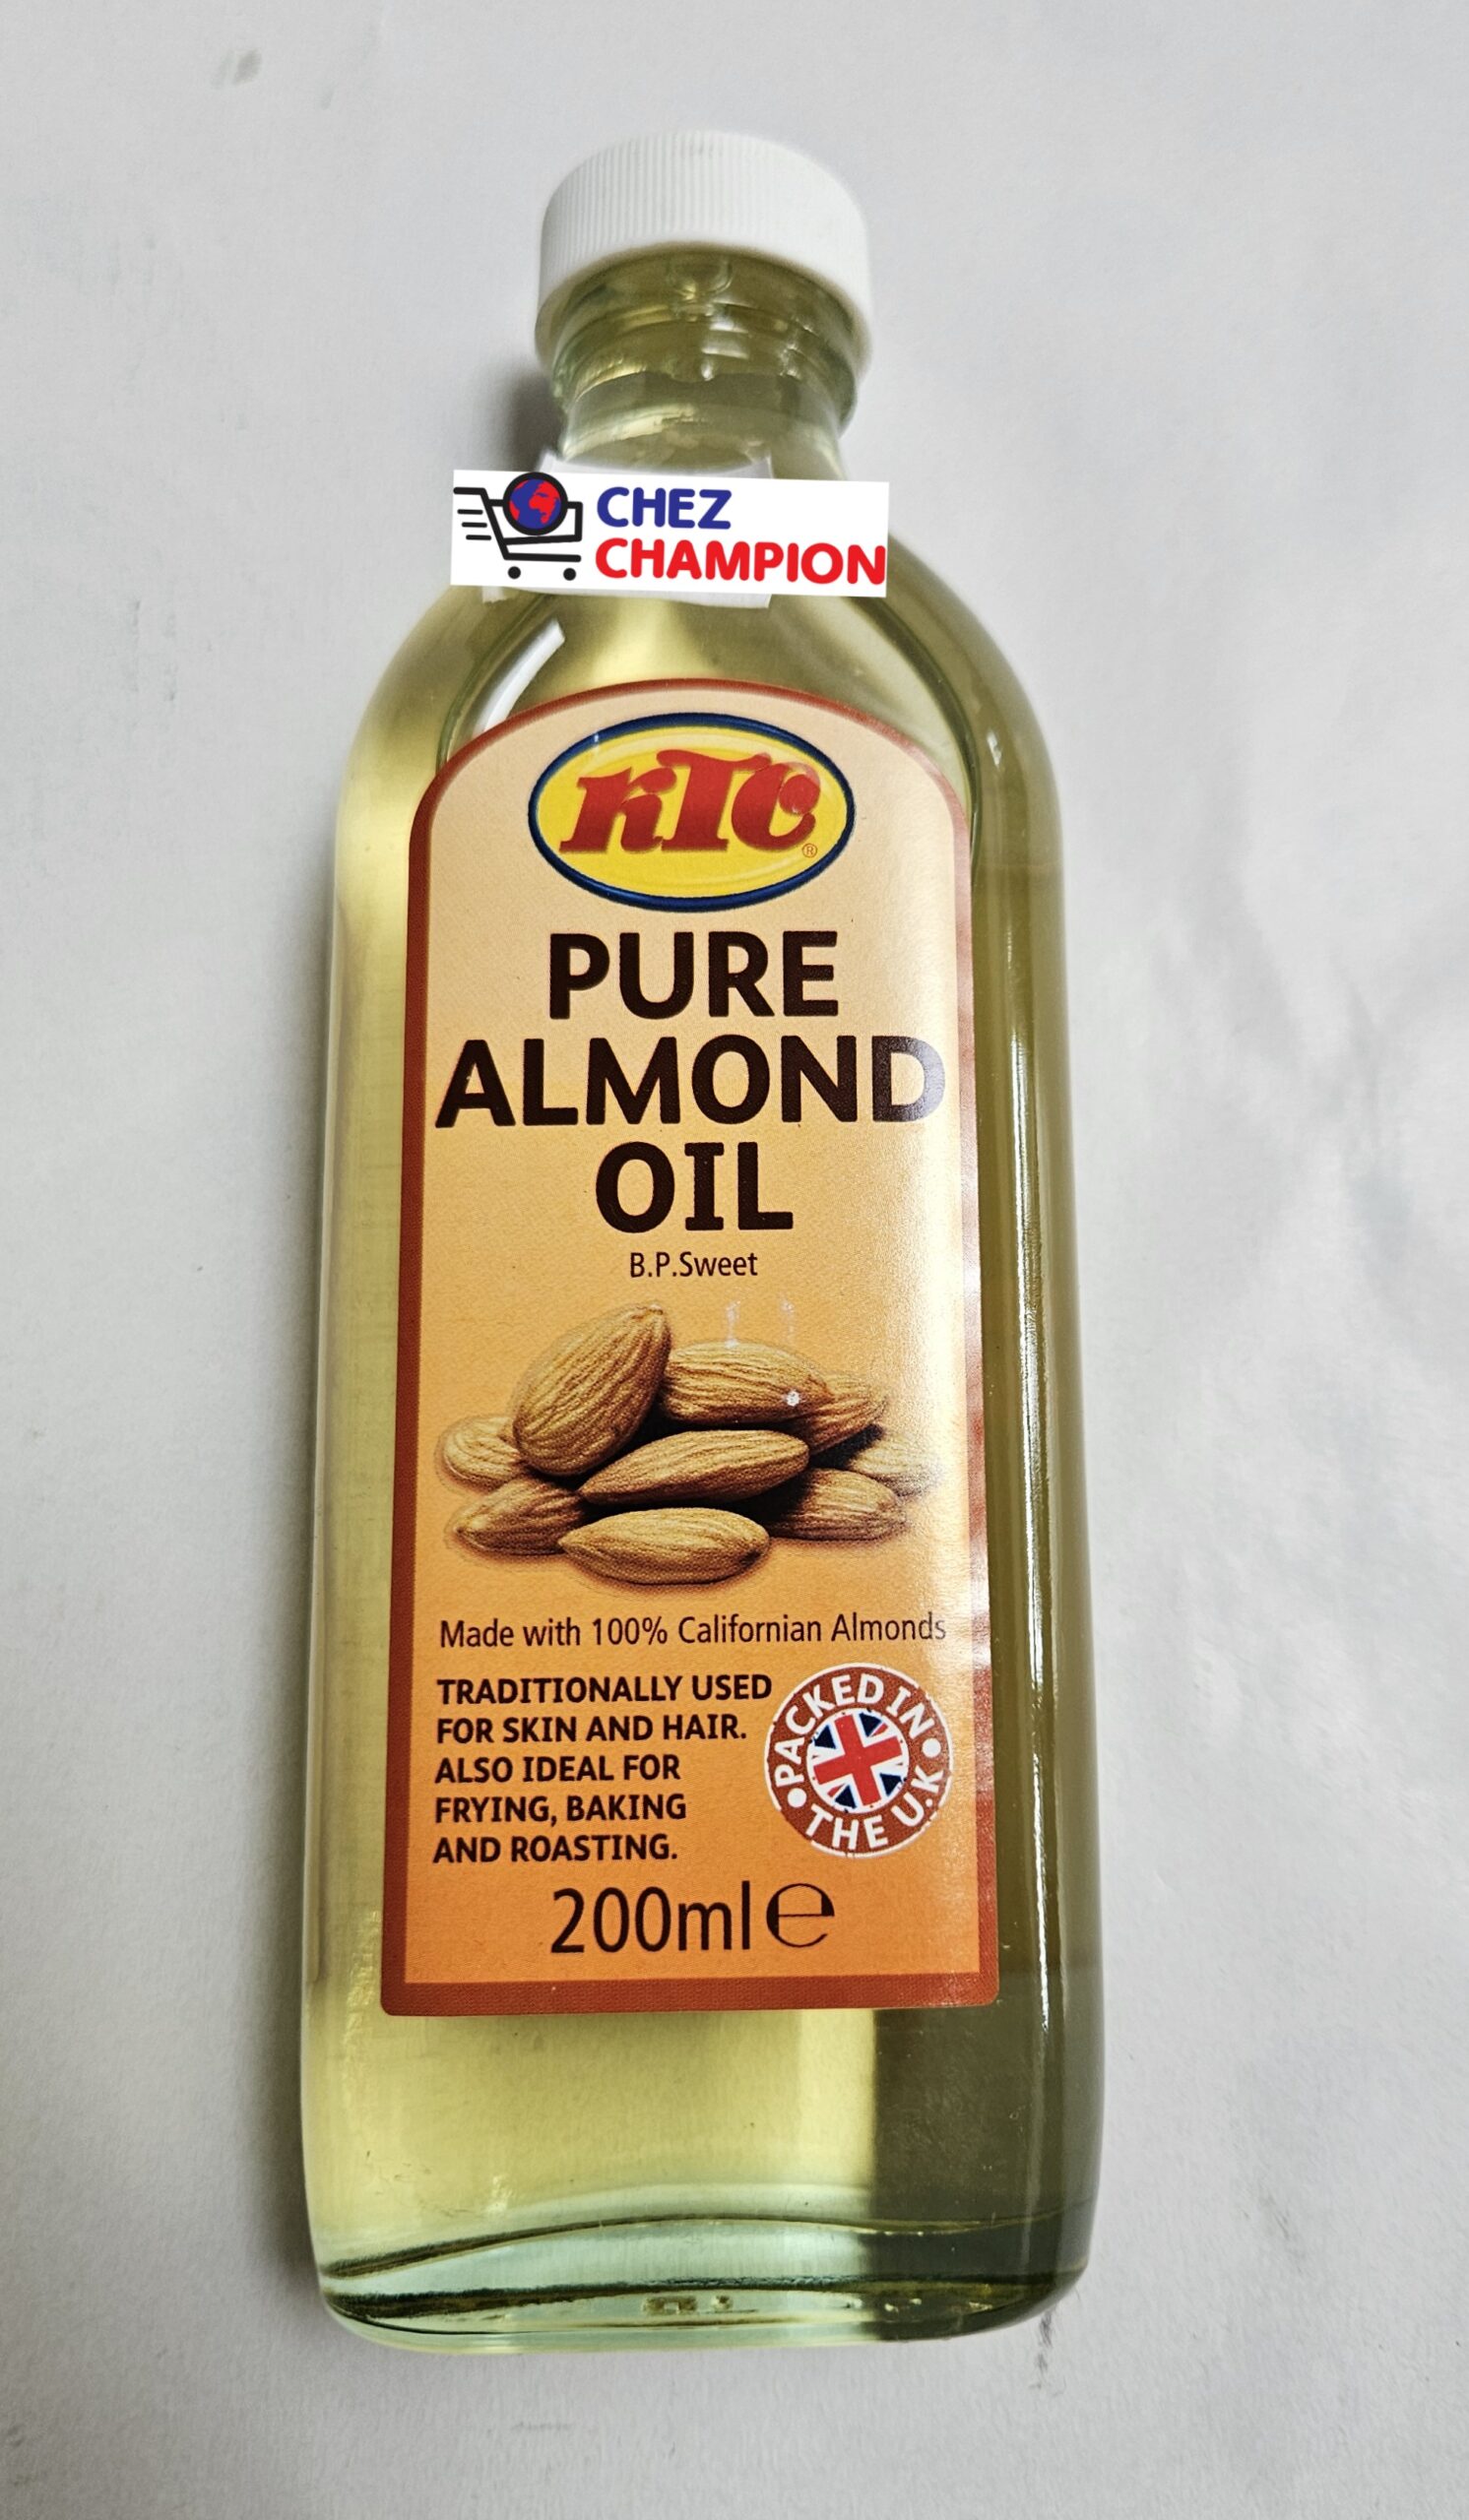 KTC pure almond oil – huile d’amande – 200ml